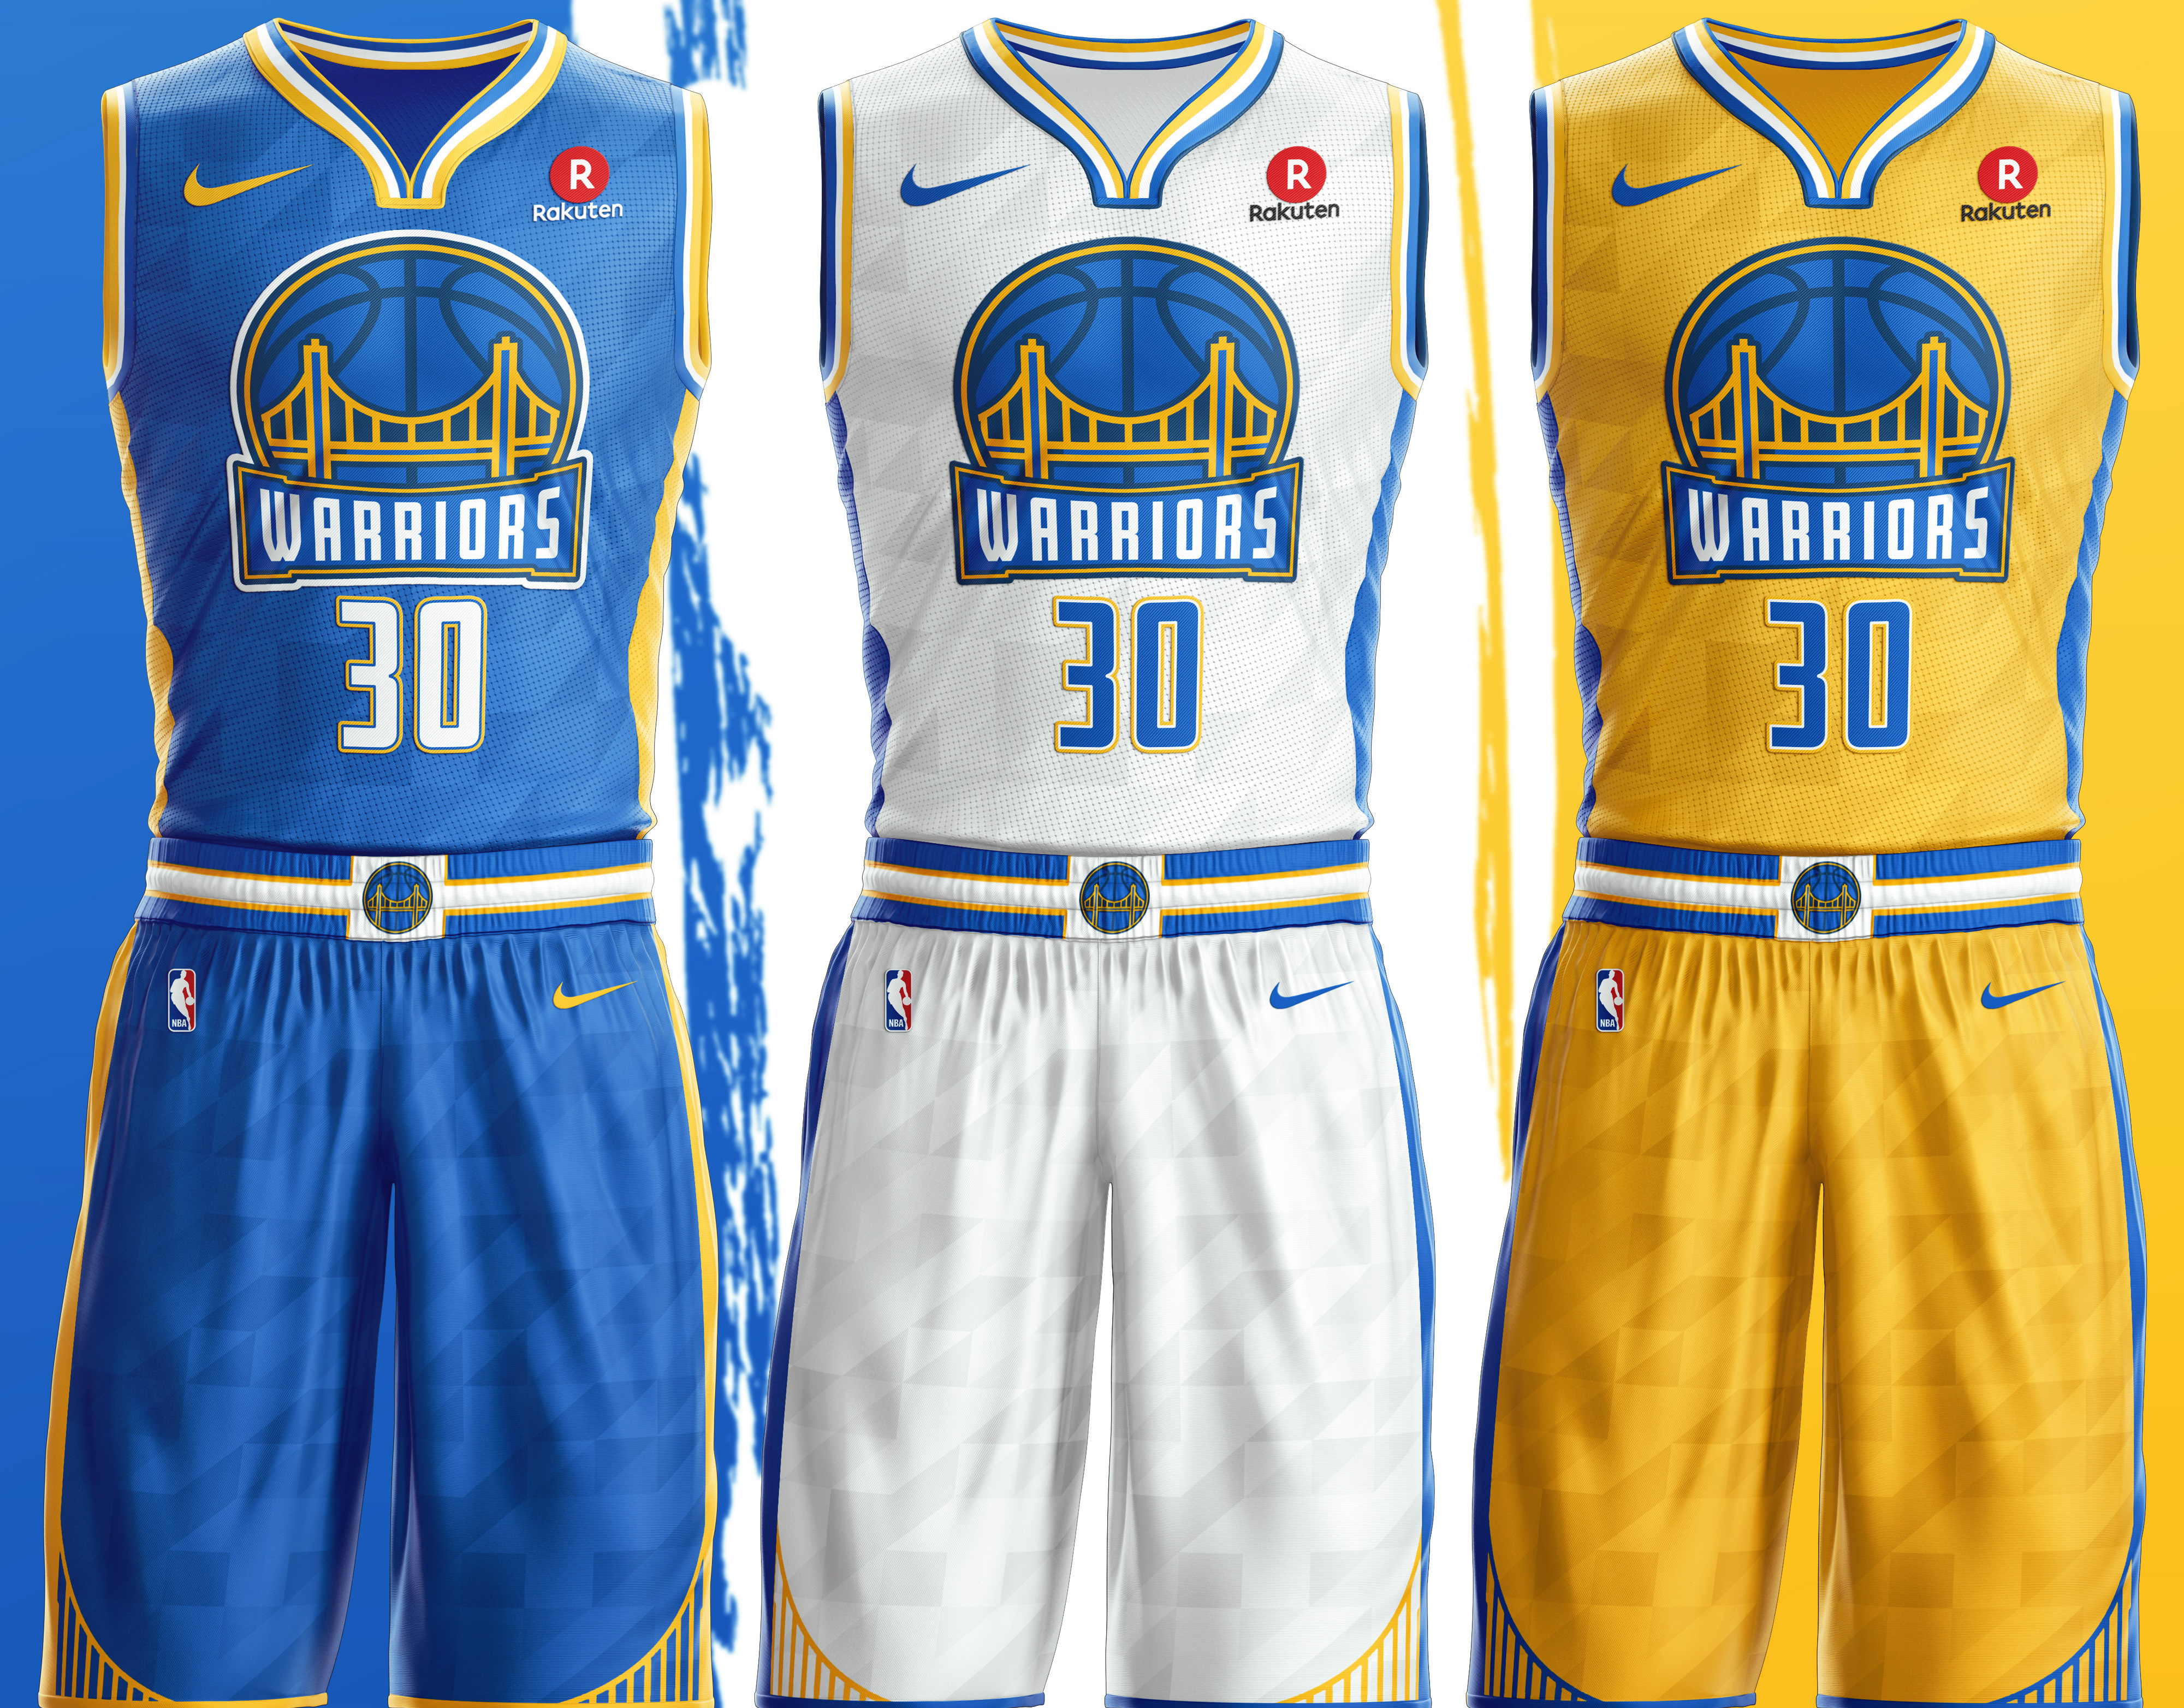 Golden State Warriors x Louis Vuitton jersey concept